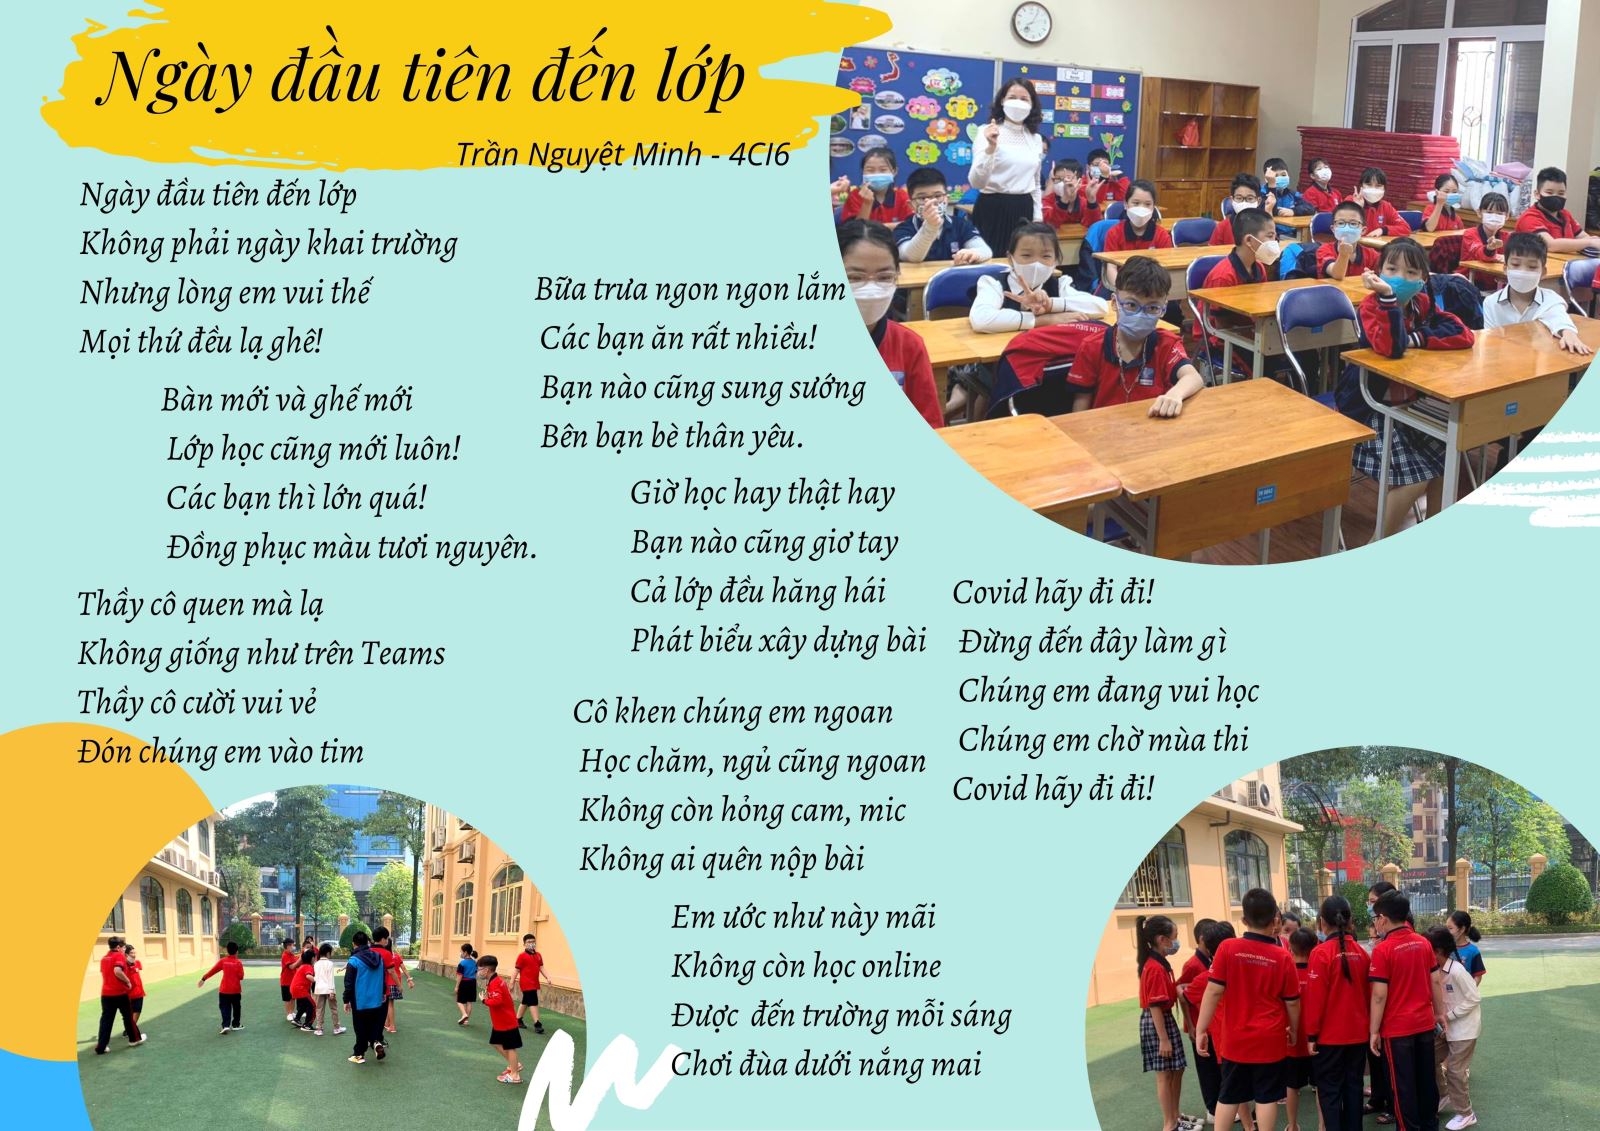 Bài thơ về "Ngày đầu tiên đến lớp - Không phải ngày khai trường"